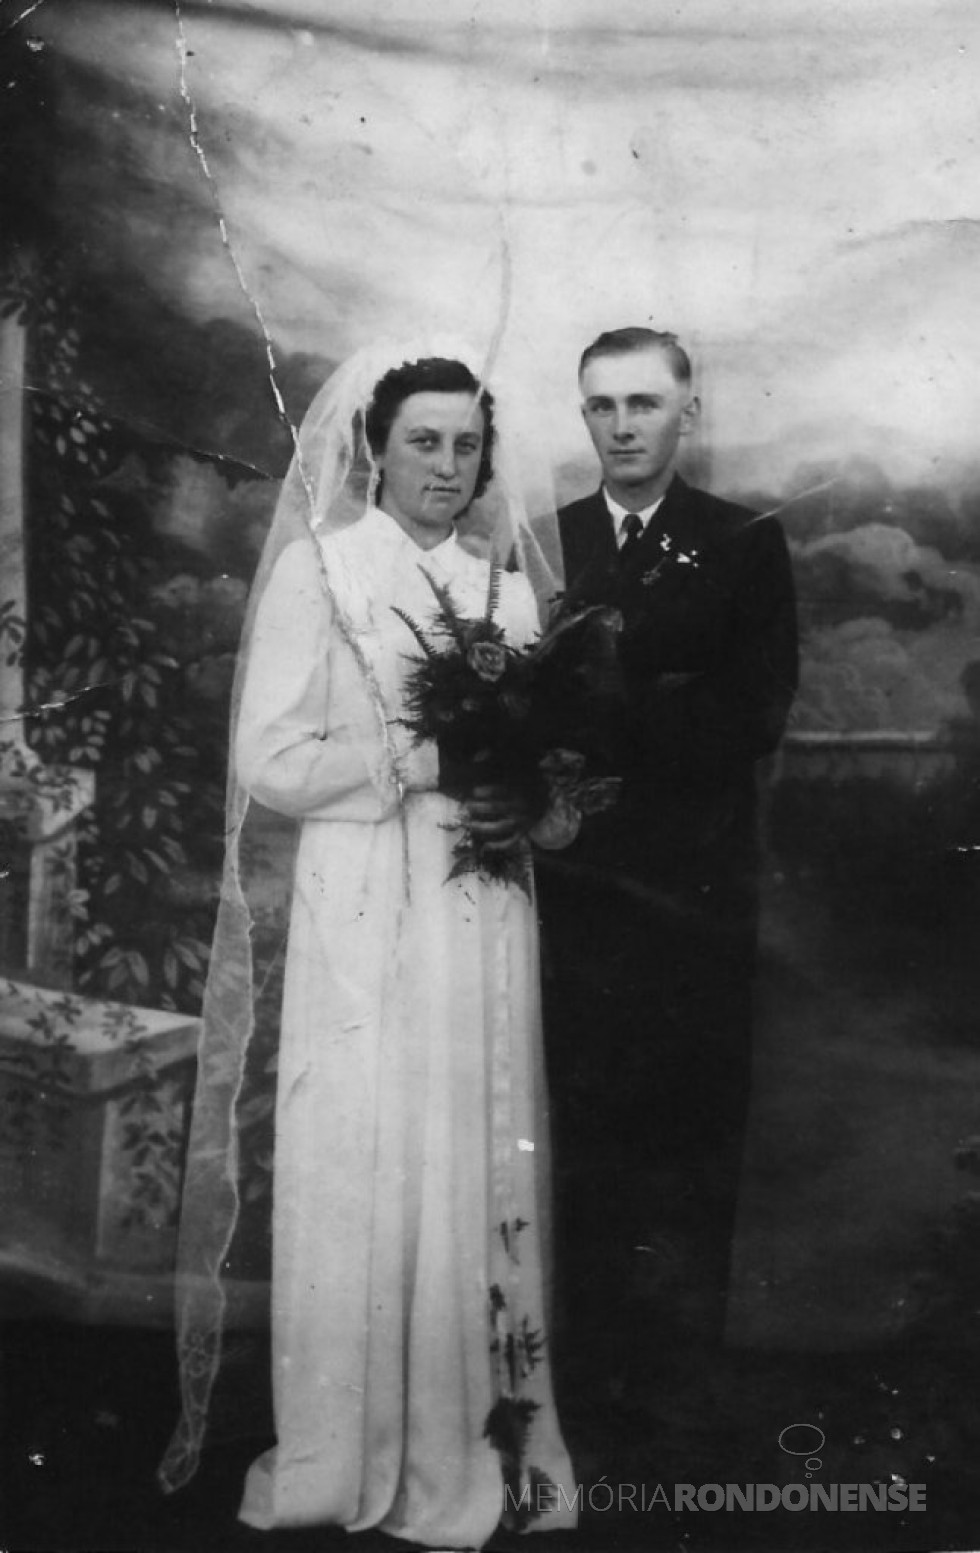 || Nair Klauk e Lauro Matias Weirich, jovens pioneiros rondonenses que se casaram em março de 1954.
Imagem: Acervo Nair Klauk - FOTO 3 -